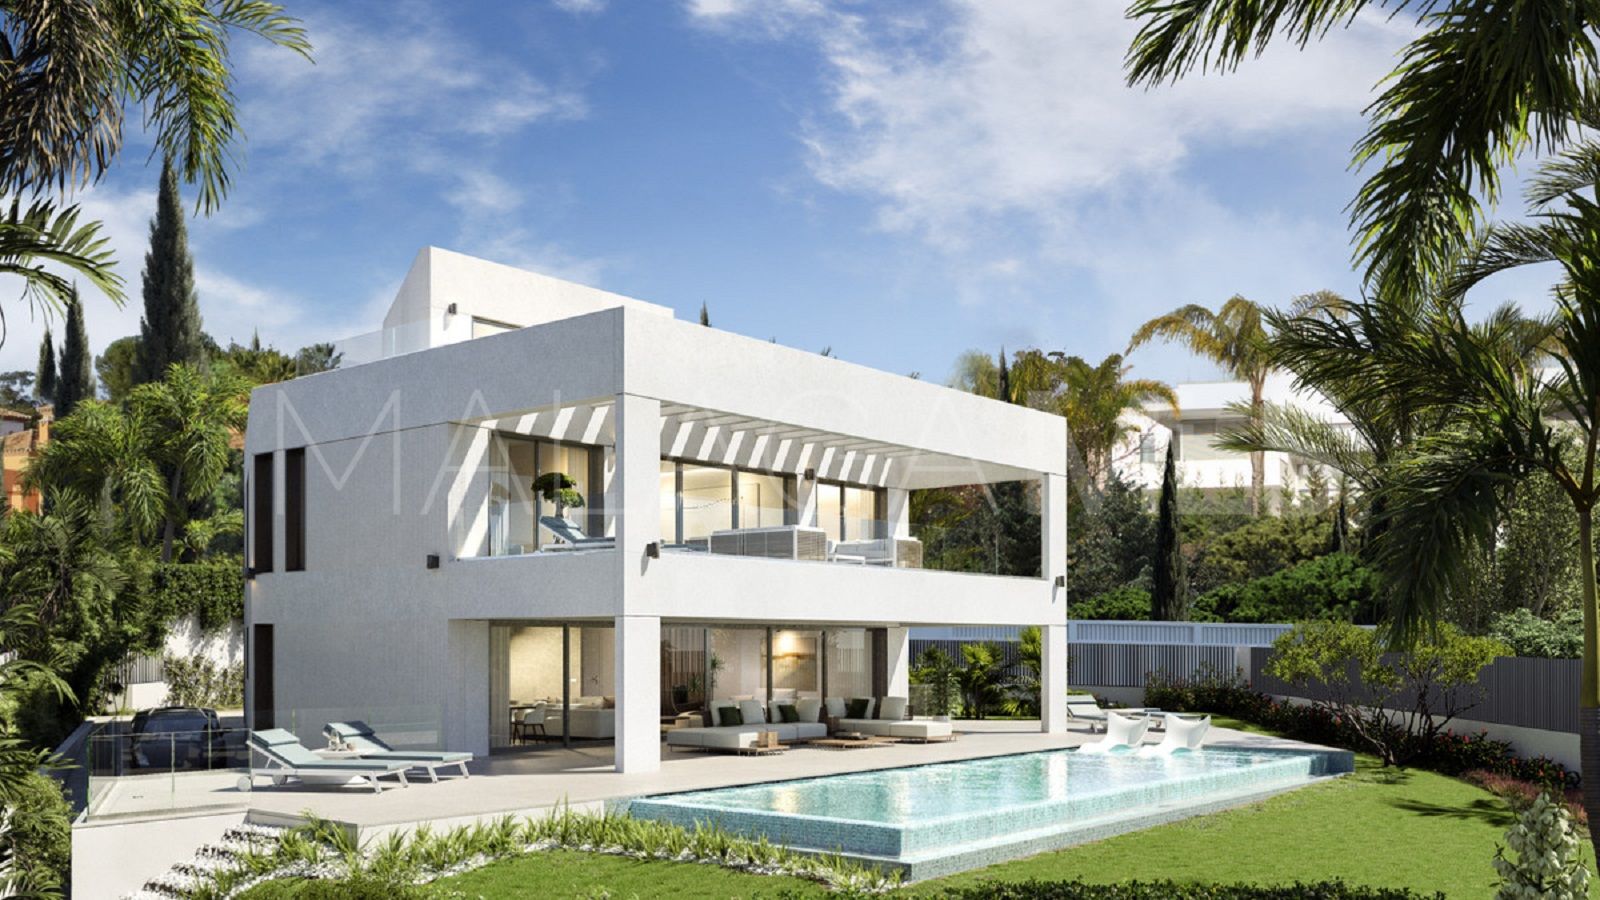 4 bedrooms villa in Guadalmina Baja for sale